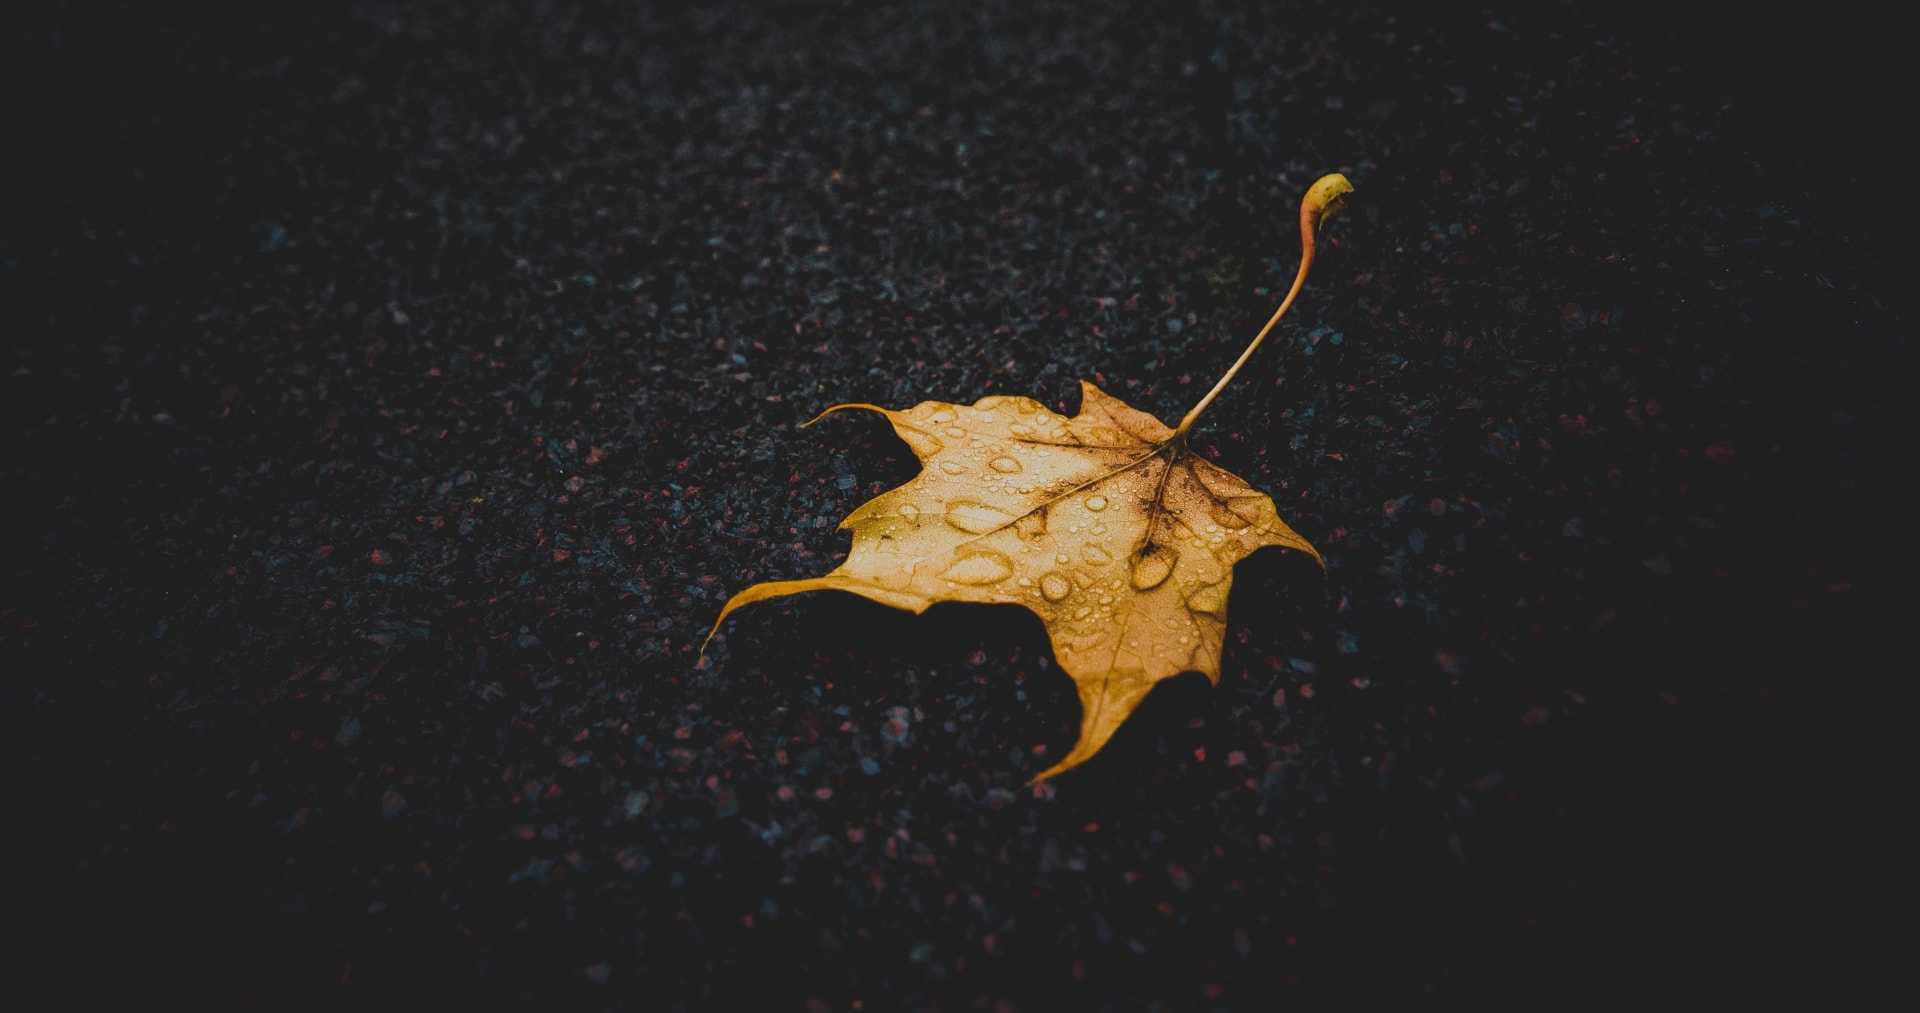 深秋季节一片叶子唯美意境图片